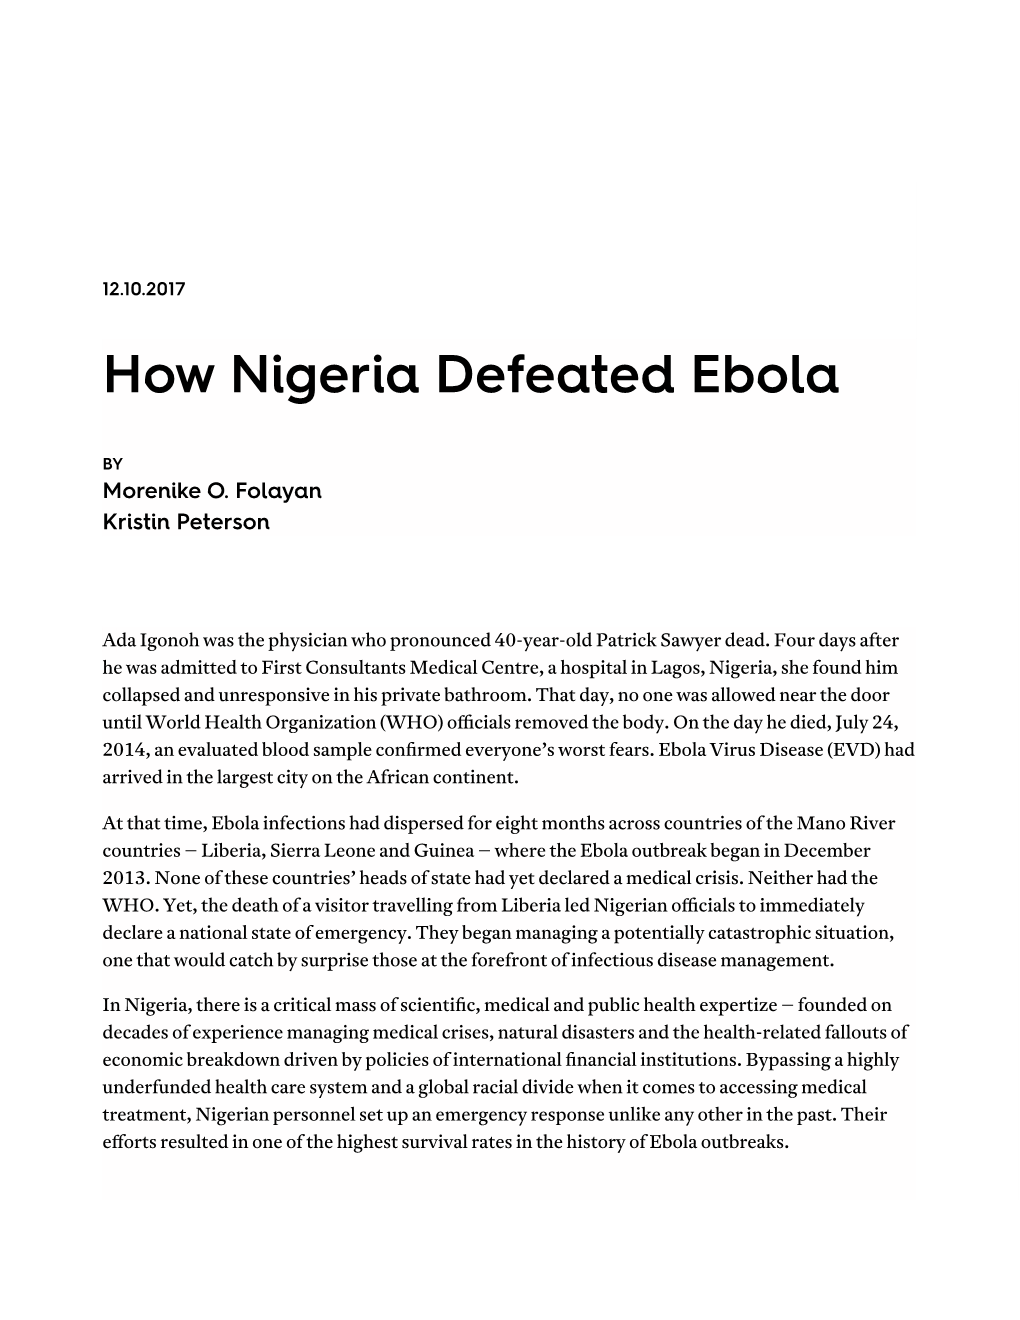 How Nigeria Defeated Ebola